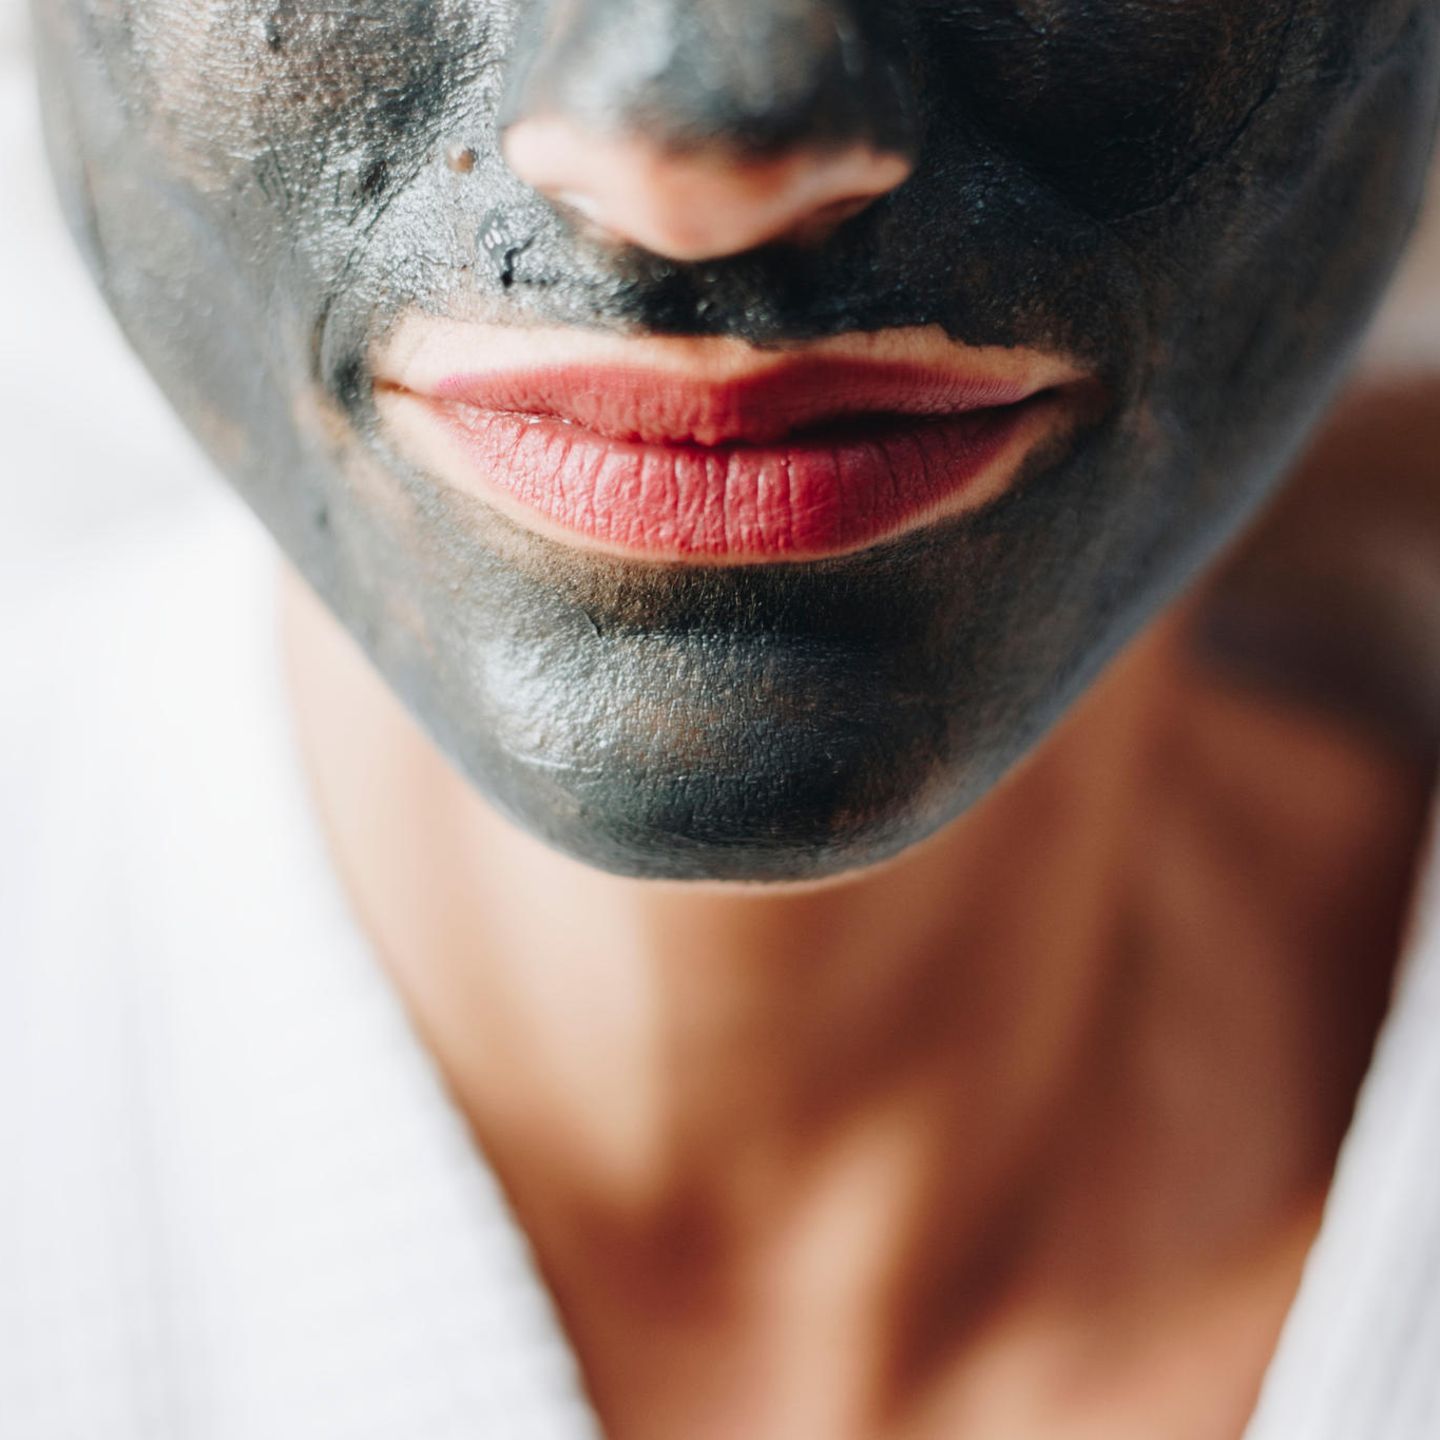 Hautpflege: Maske richtig auftragen